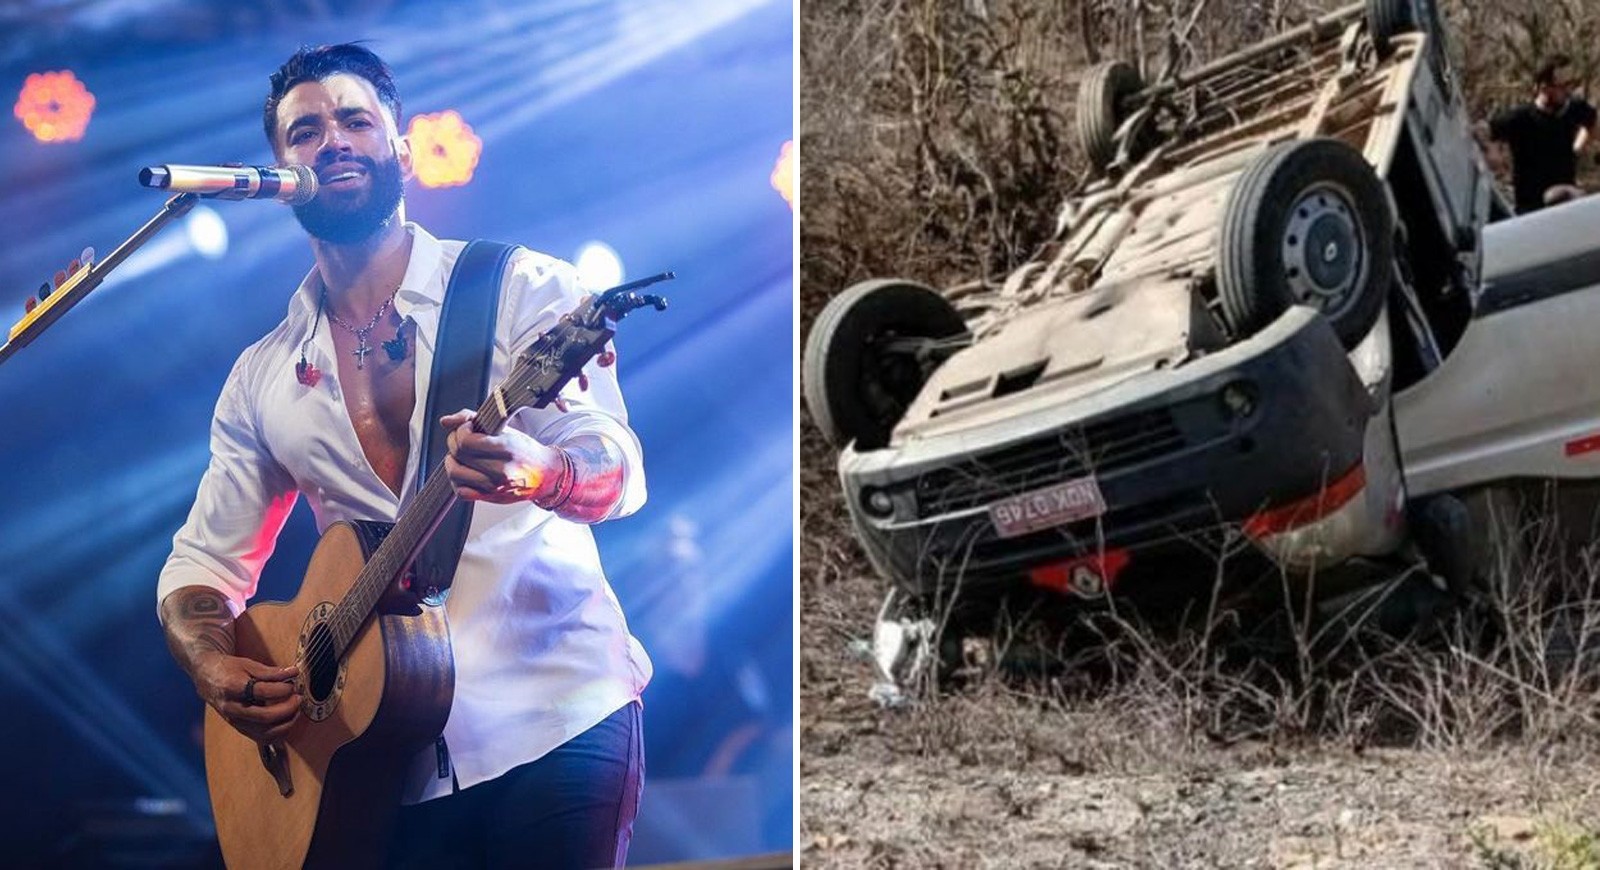 Equipe de Gusttavo Lima se envolve em acidente de van na Paraíba; cantor não estava no veículo